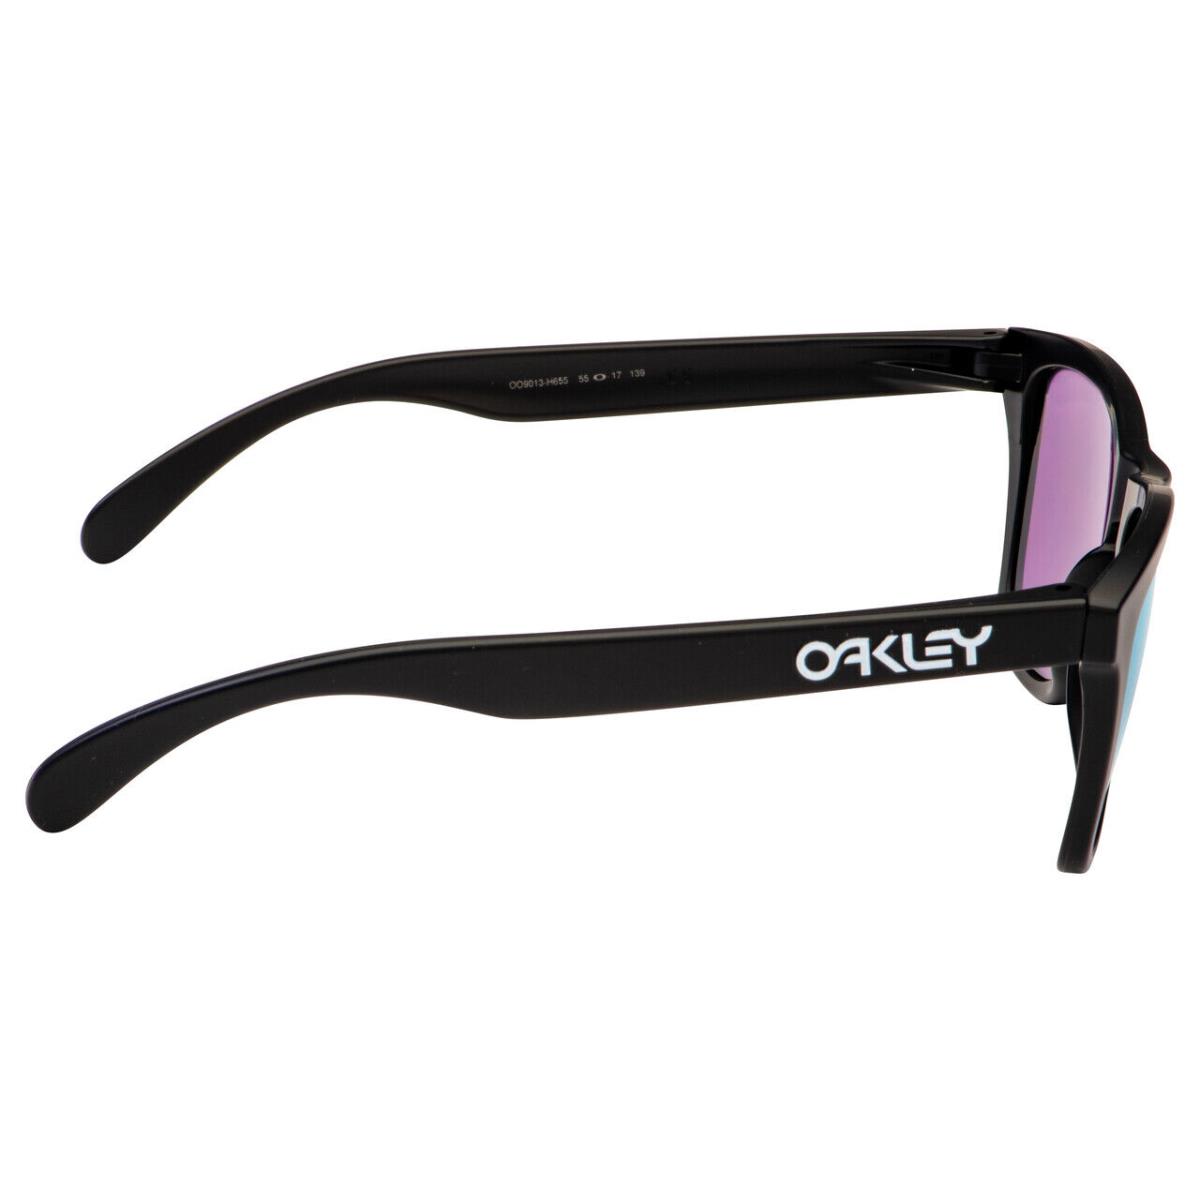 Oakley Frogskins Prizm Violet Lens Sunglasses OO9013-H6 55